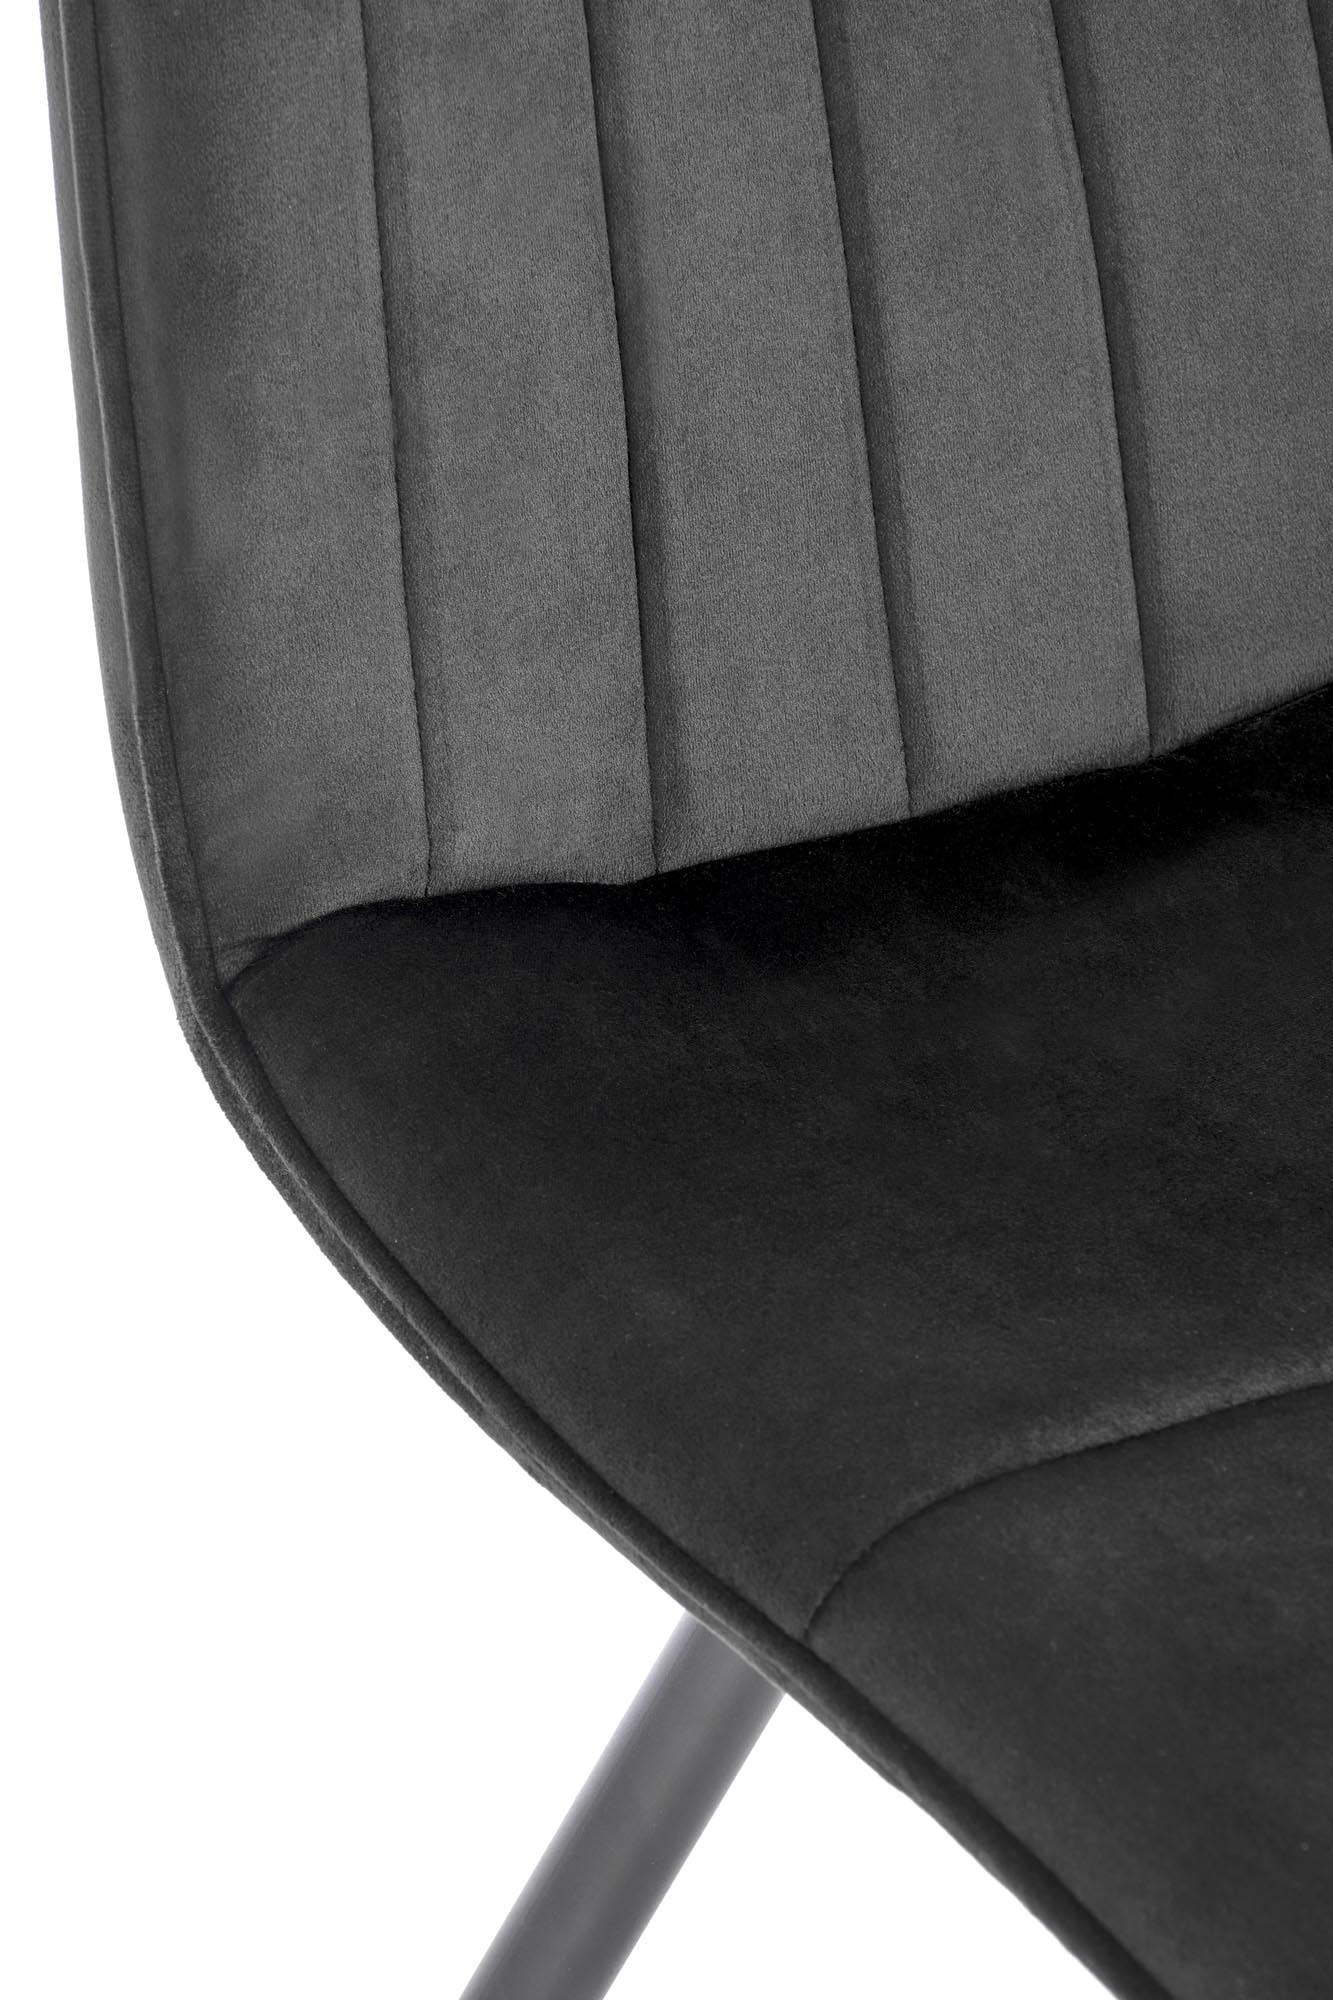 K521 krzesło czarny